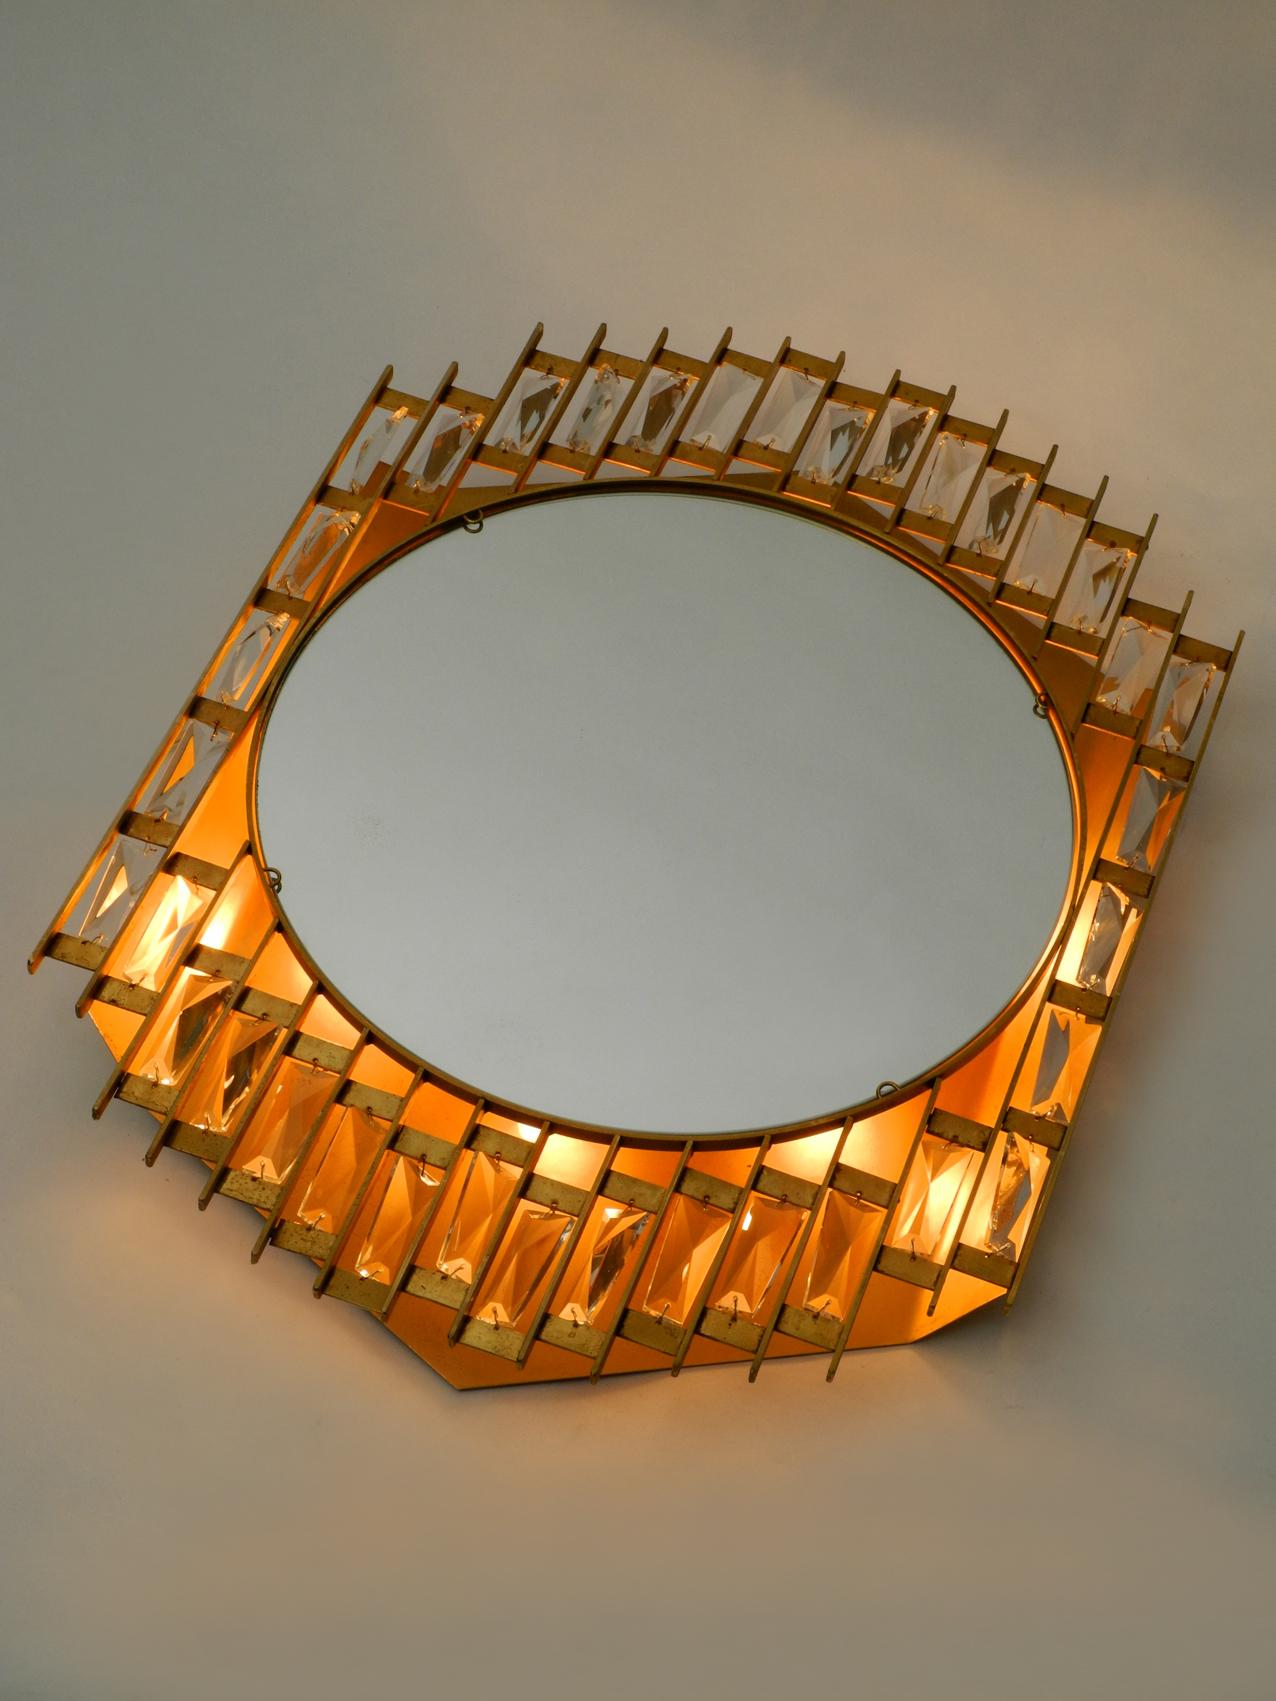 1960s Golden Brutalist Design Wall Backlit Mirror by Hillebrand Made of Metal (Mitte des 20. Jahrhunderts)